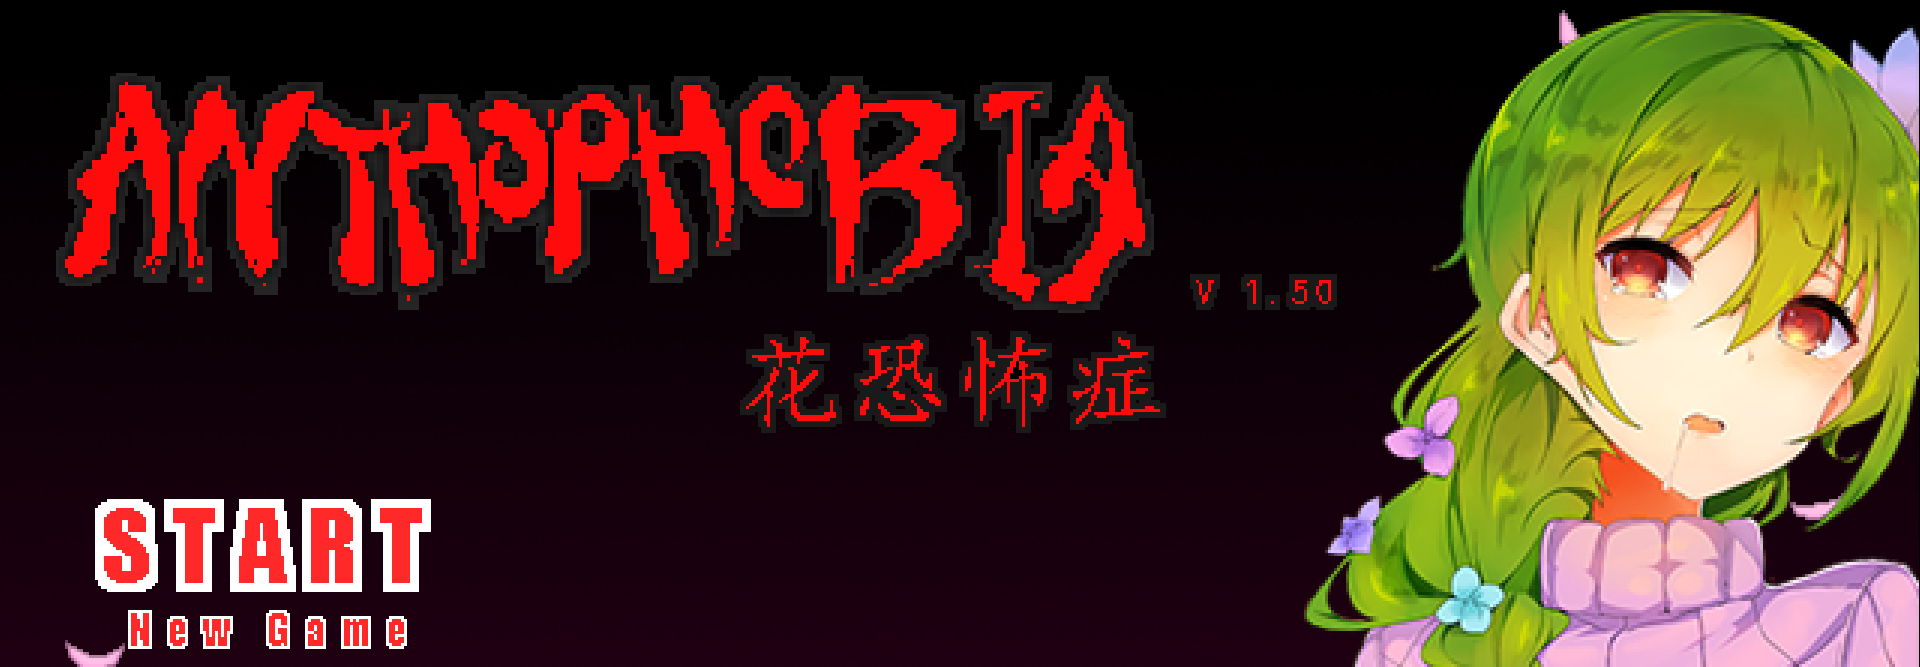 Anthophobia v2.00 [COMPLETED] - free game download, reviews, mega - xGames